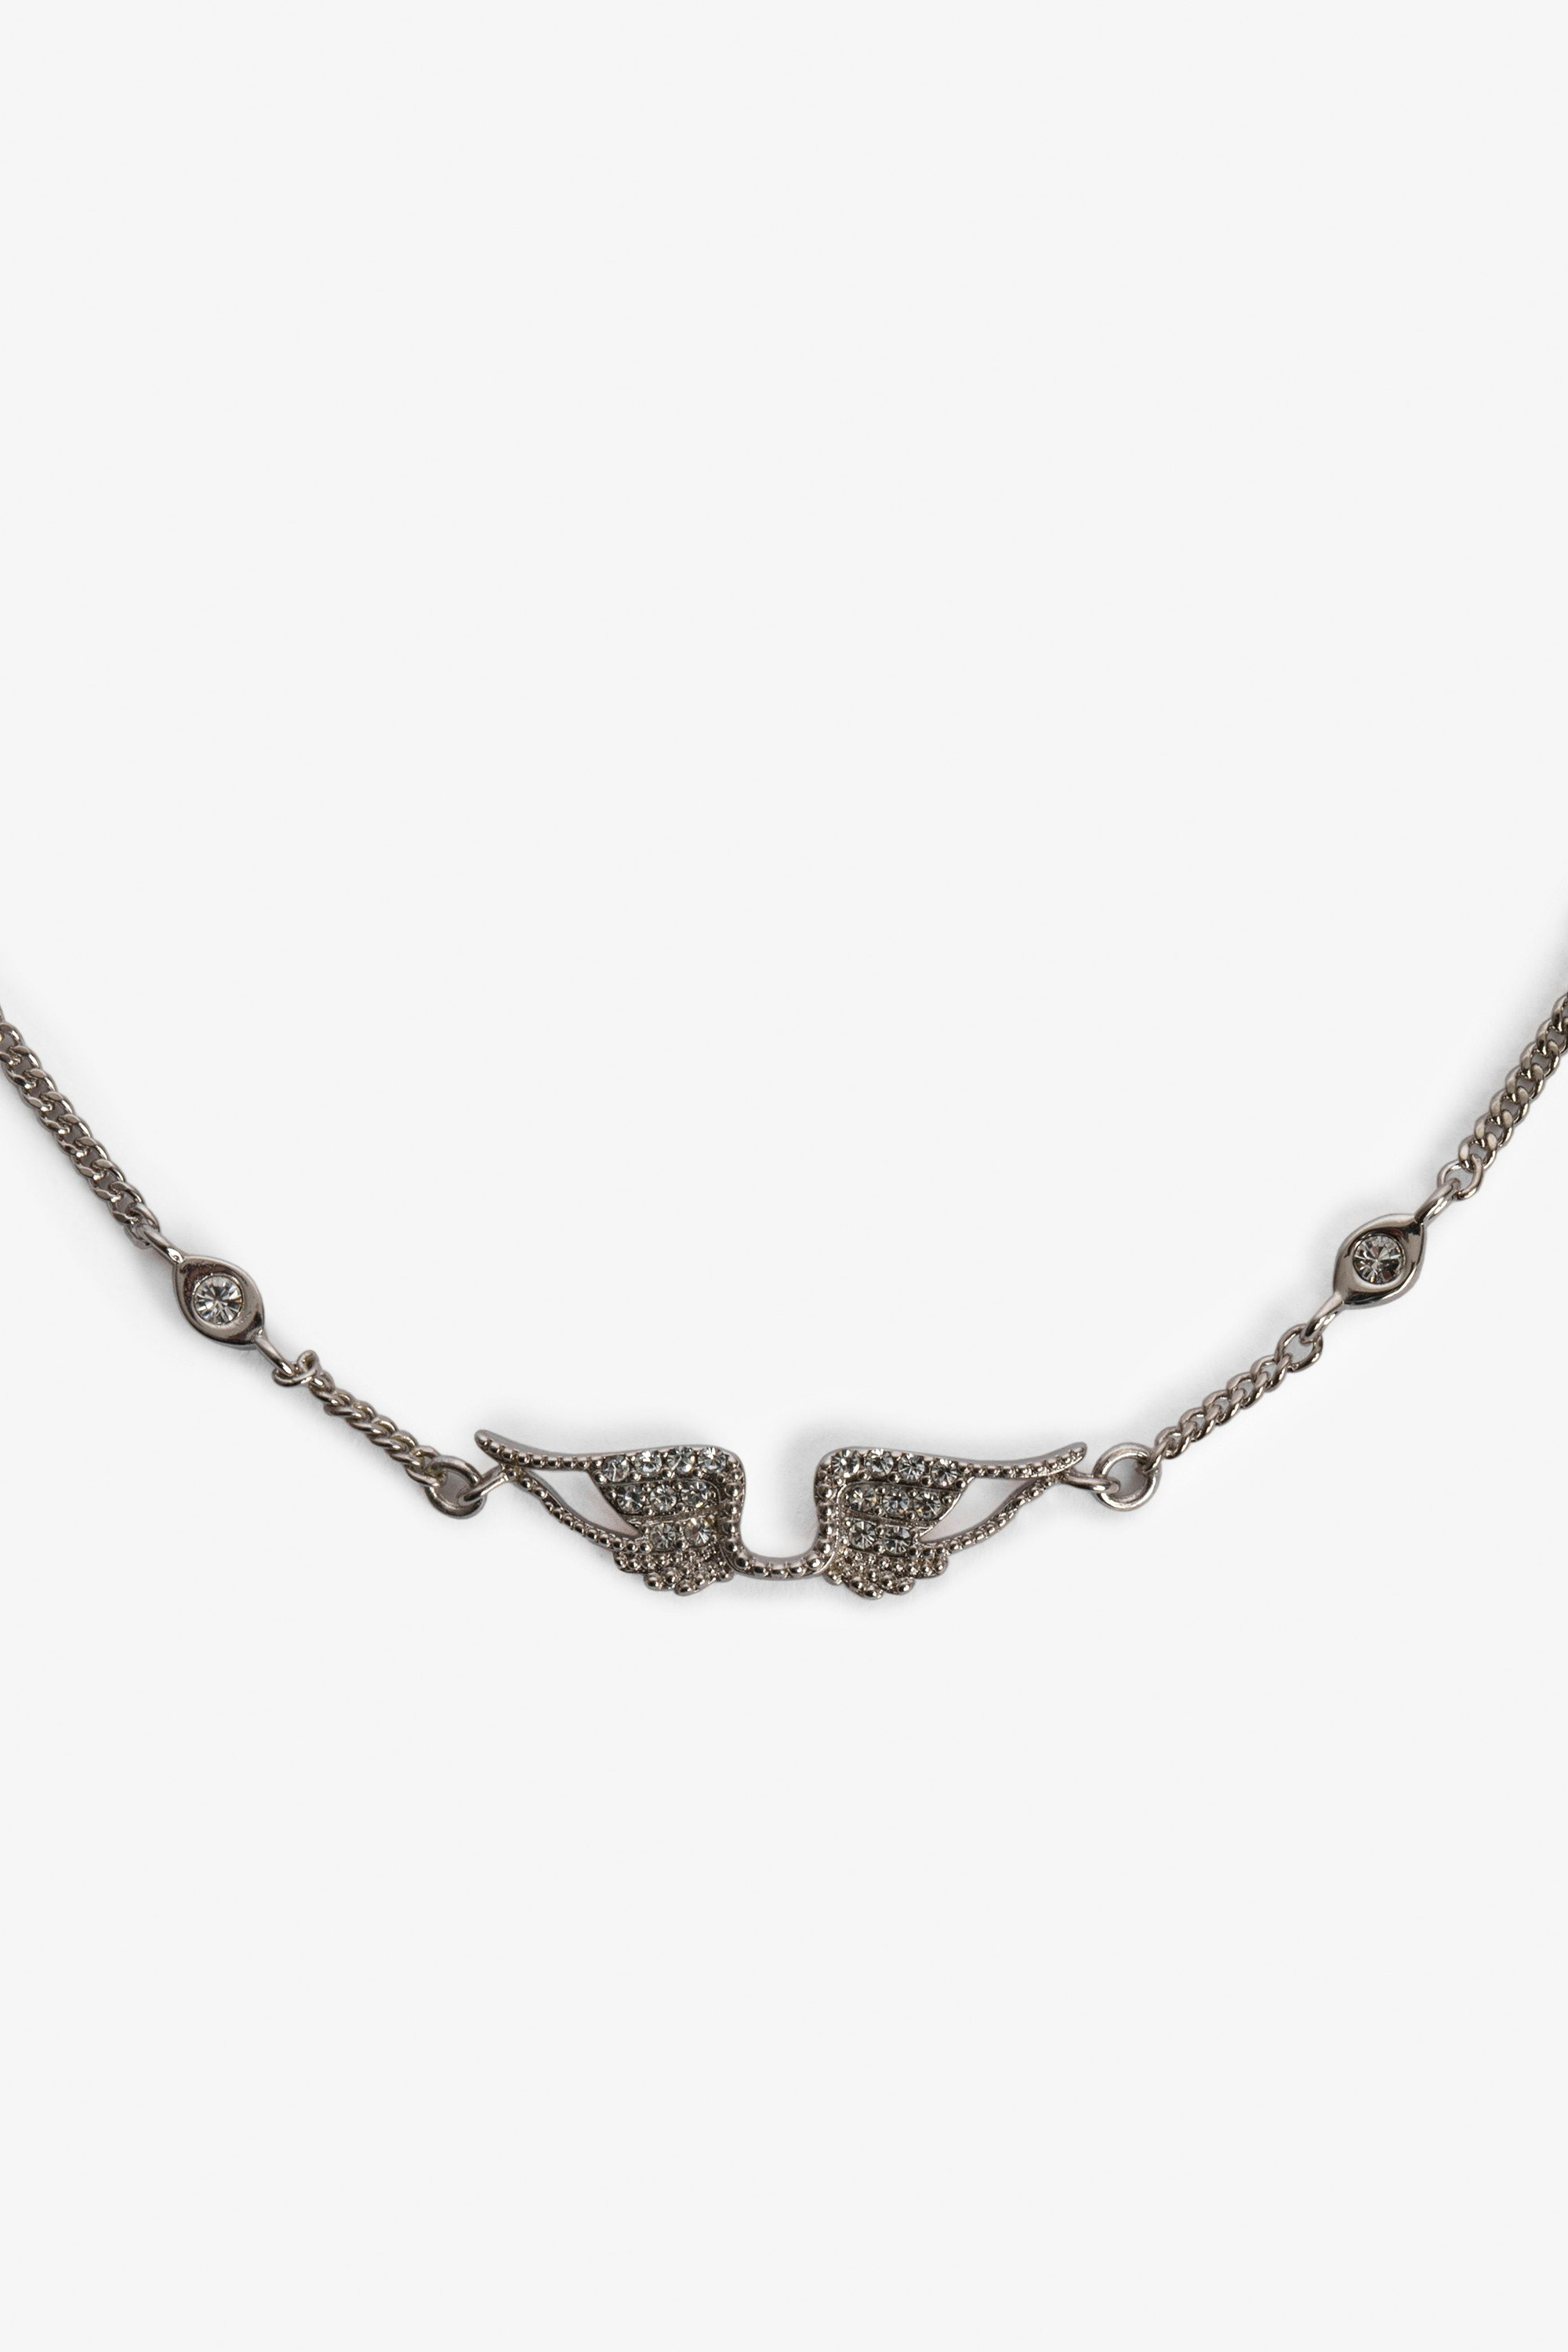 Rock Bracelet Women's brass and rhinestone chain bracelet with wings